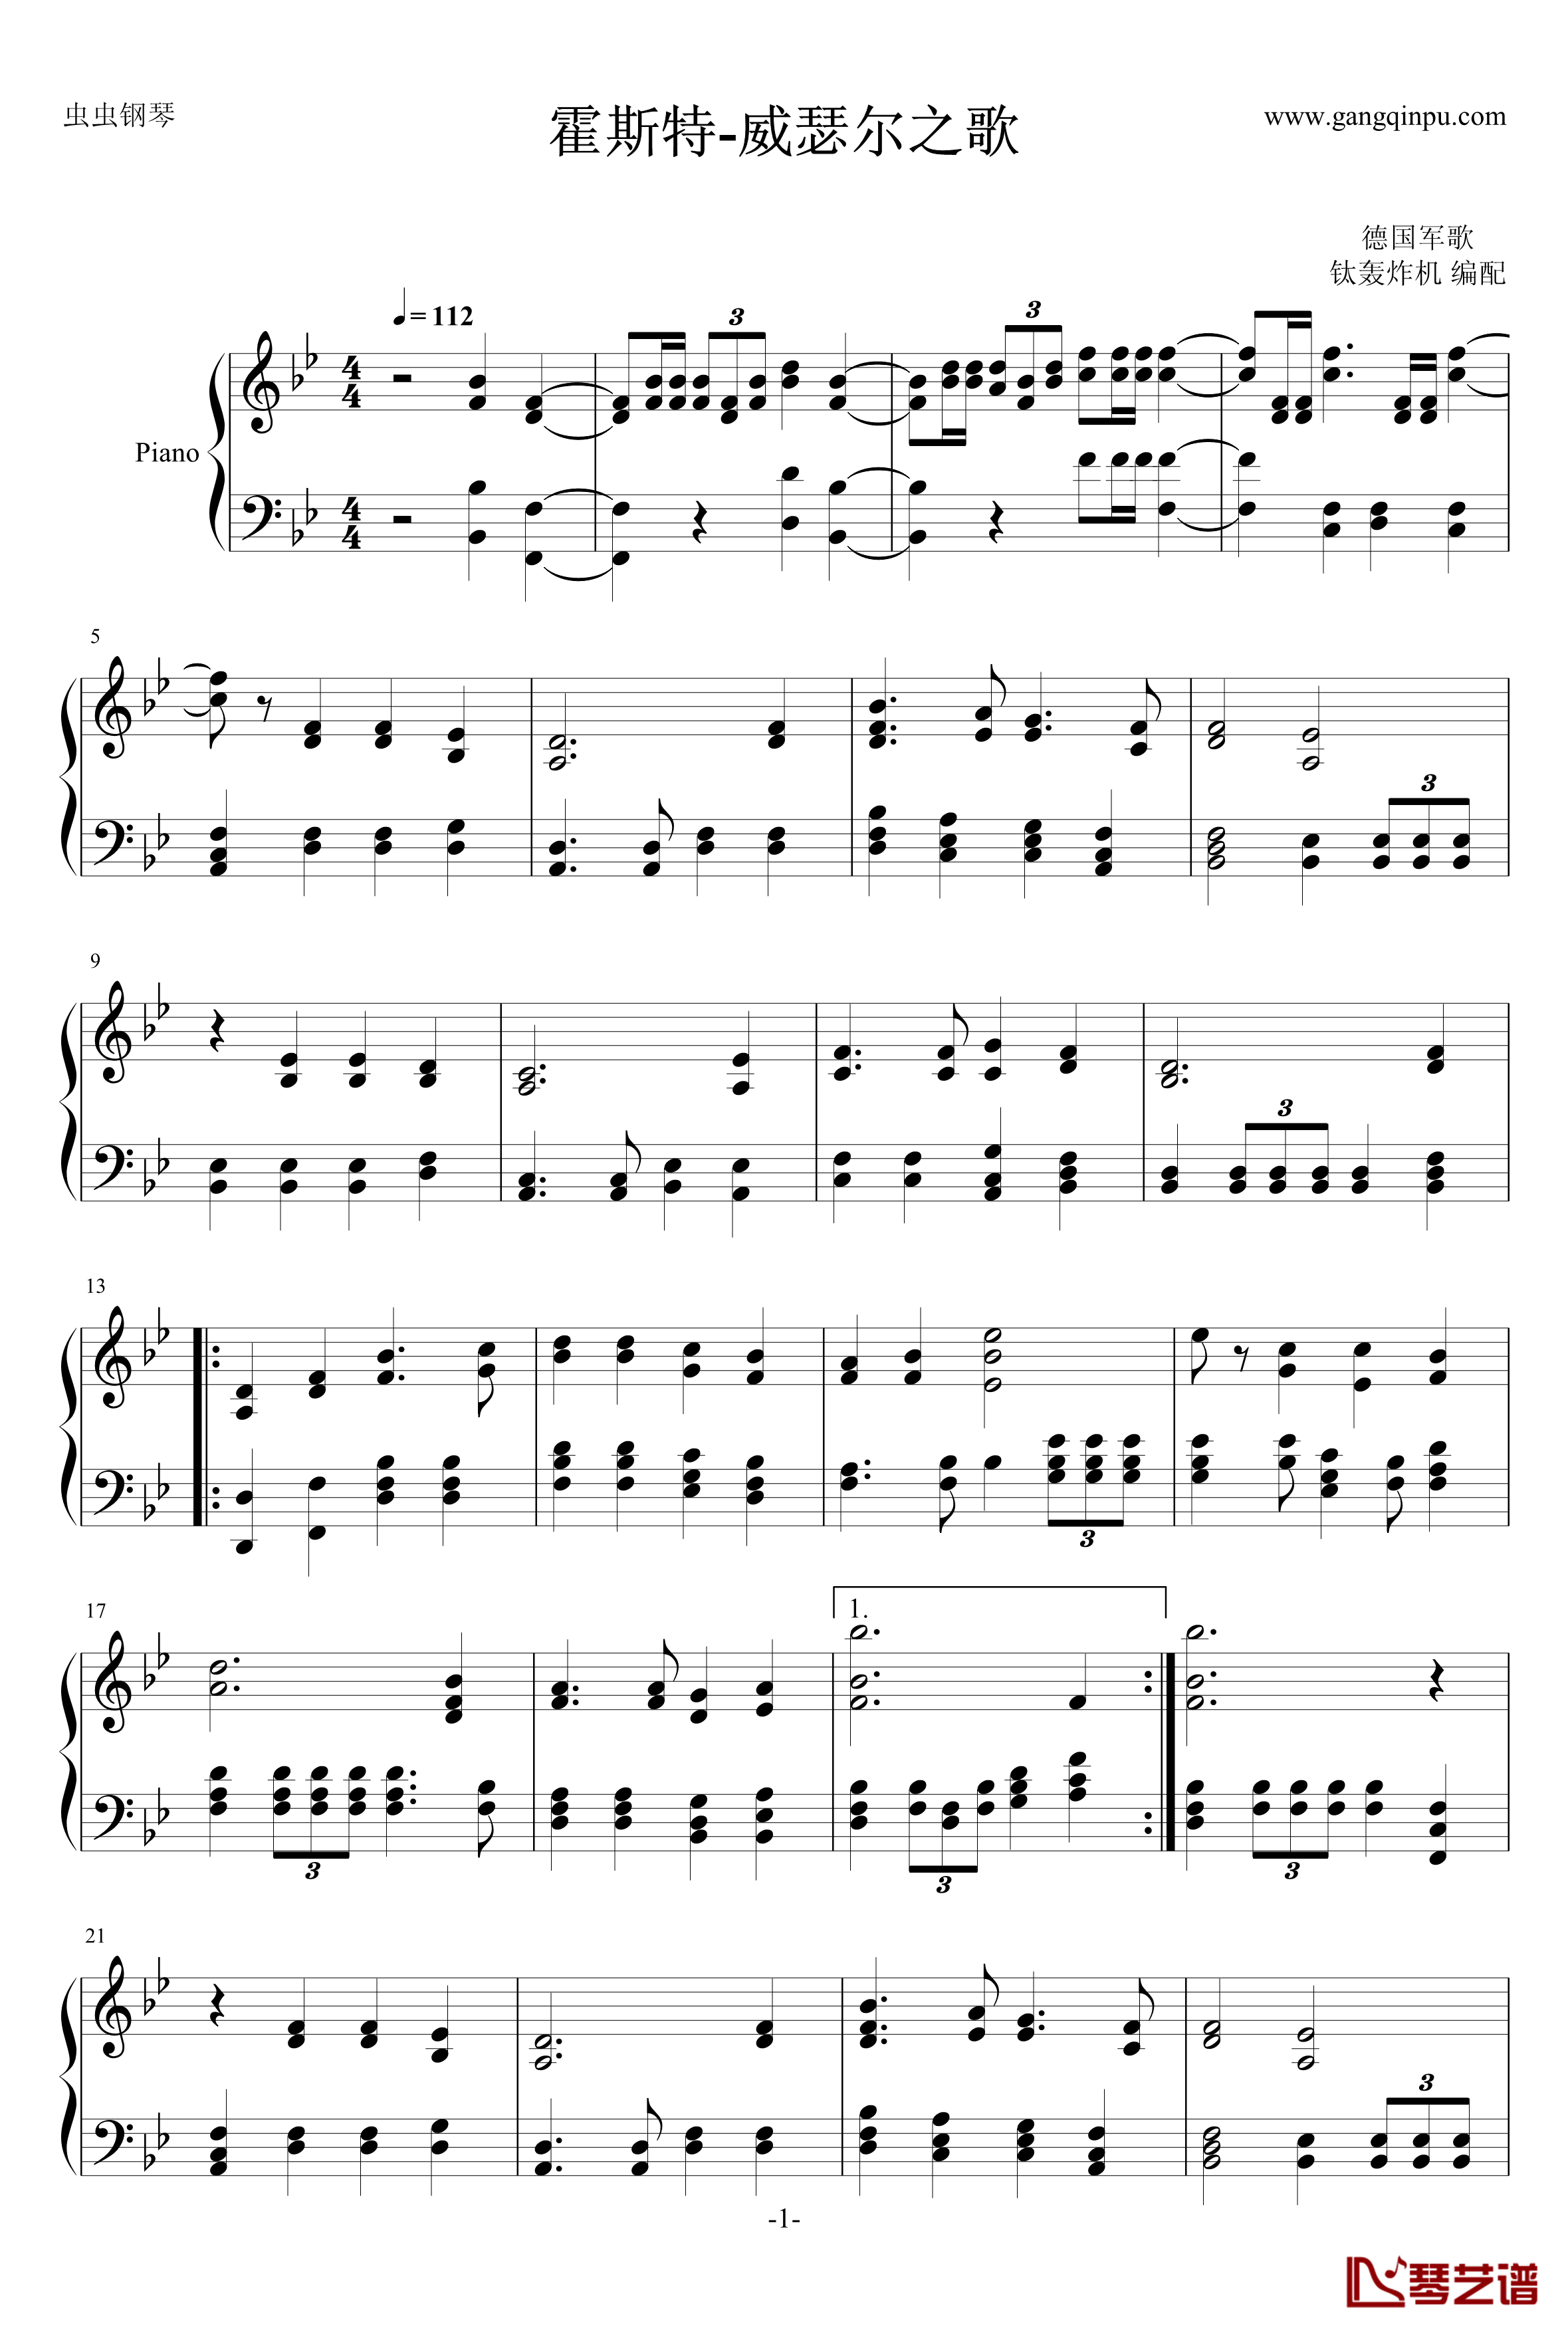 霍斯特钢琴谱-威瑟尔之歌-德国军歌